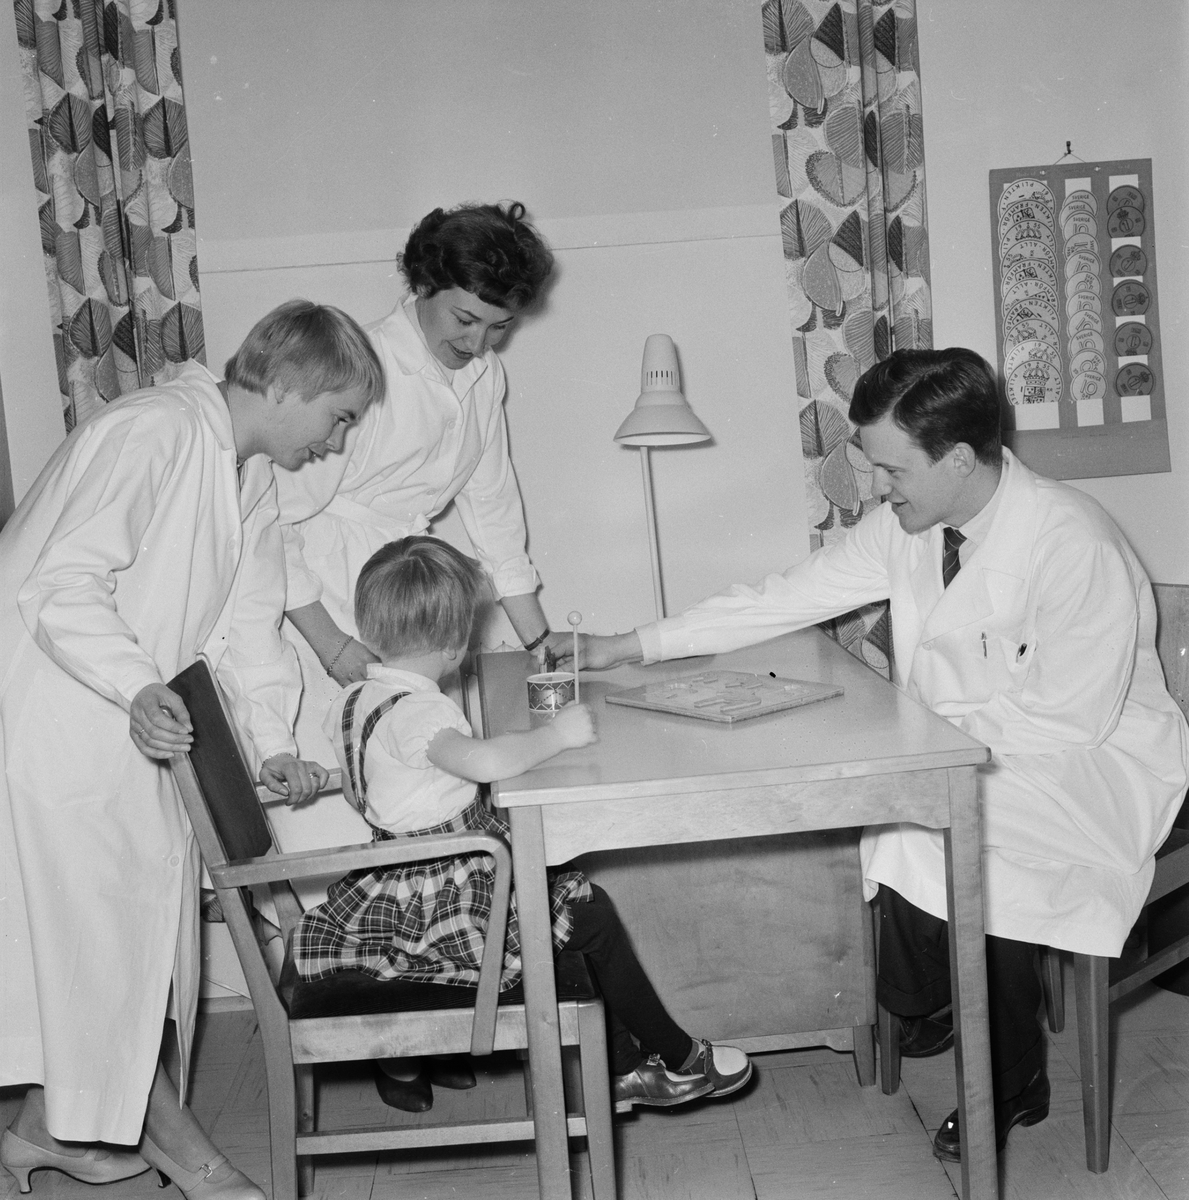 Akademiska sjukhuset, klinikbygge startar i höst för de psykiskt sjuka barnen, Uppsala, april 1959